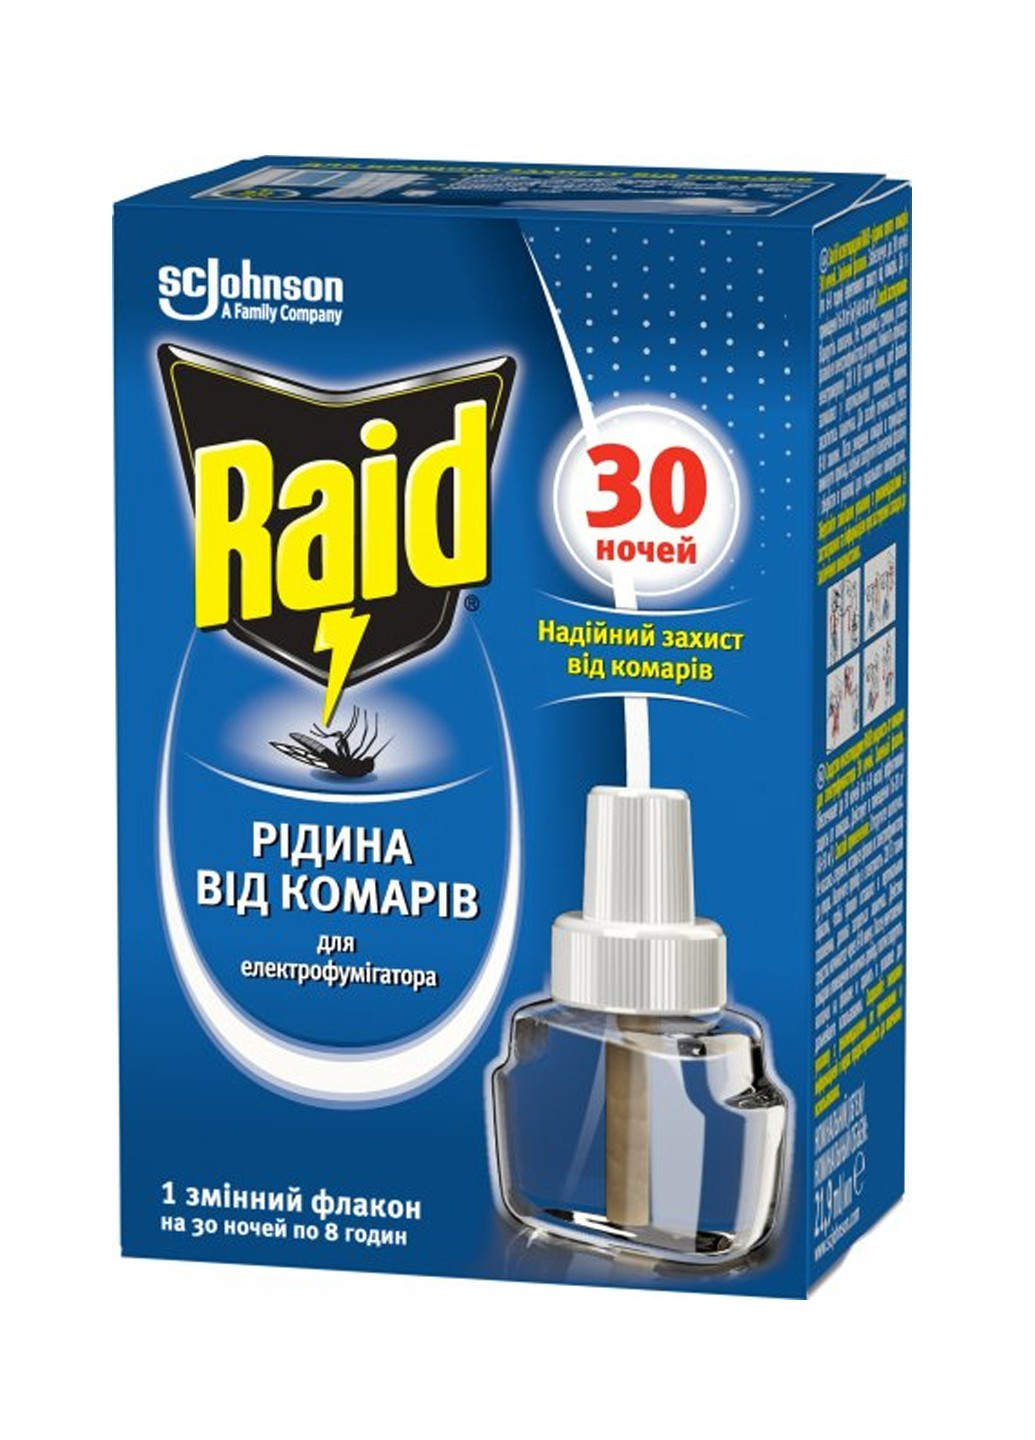 Рідина від комарів для електрофумігаторів 30 ночей 20 мл Raid (293377713)